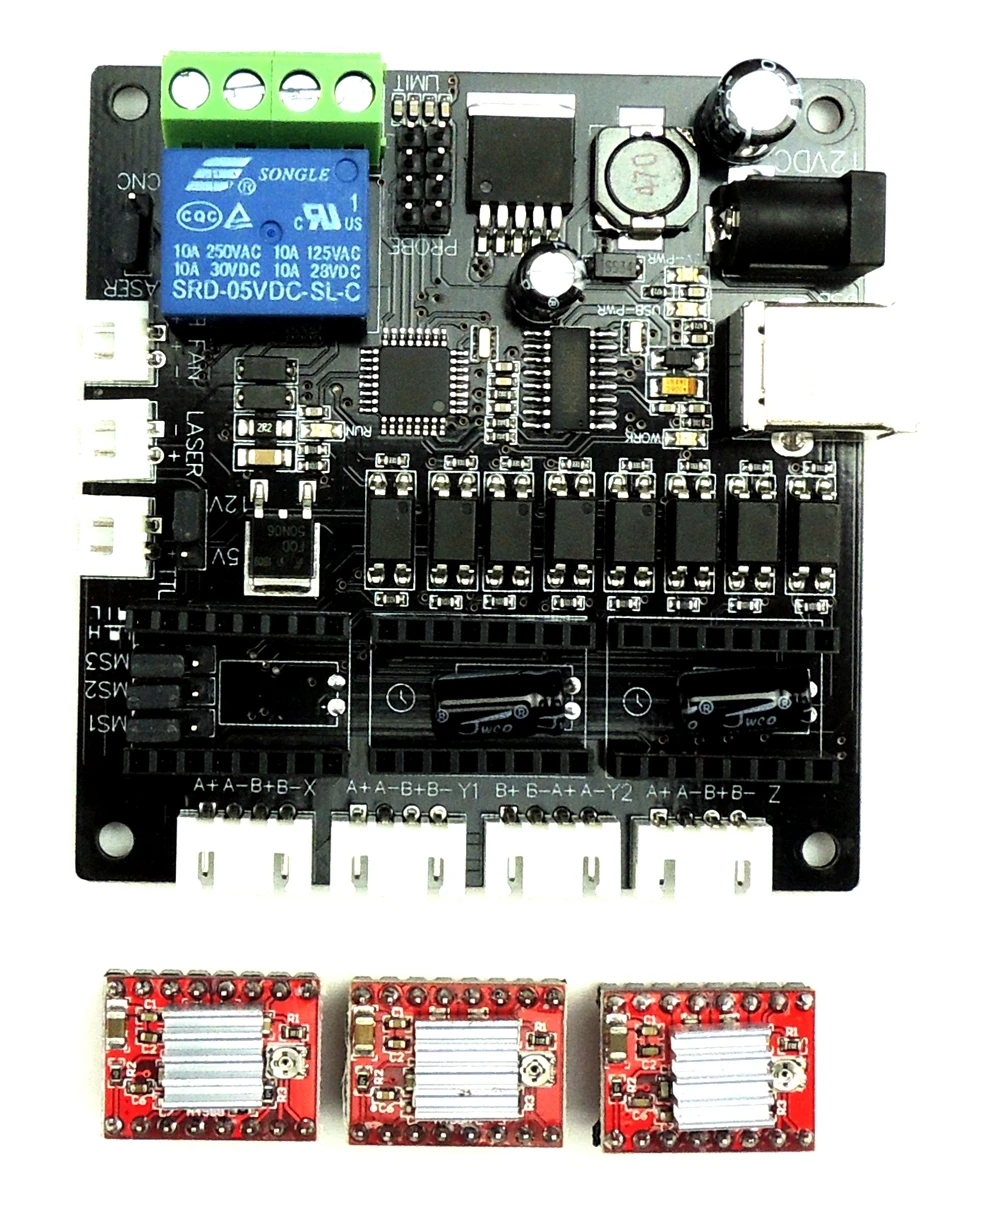 GRBL Лазерная плата контроллера Мини гравировальный станок с ЧПУ USB 3 оси шаговый двигатель драйвер плата контроллера